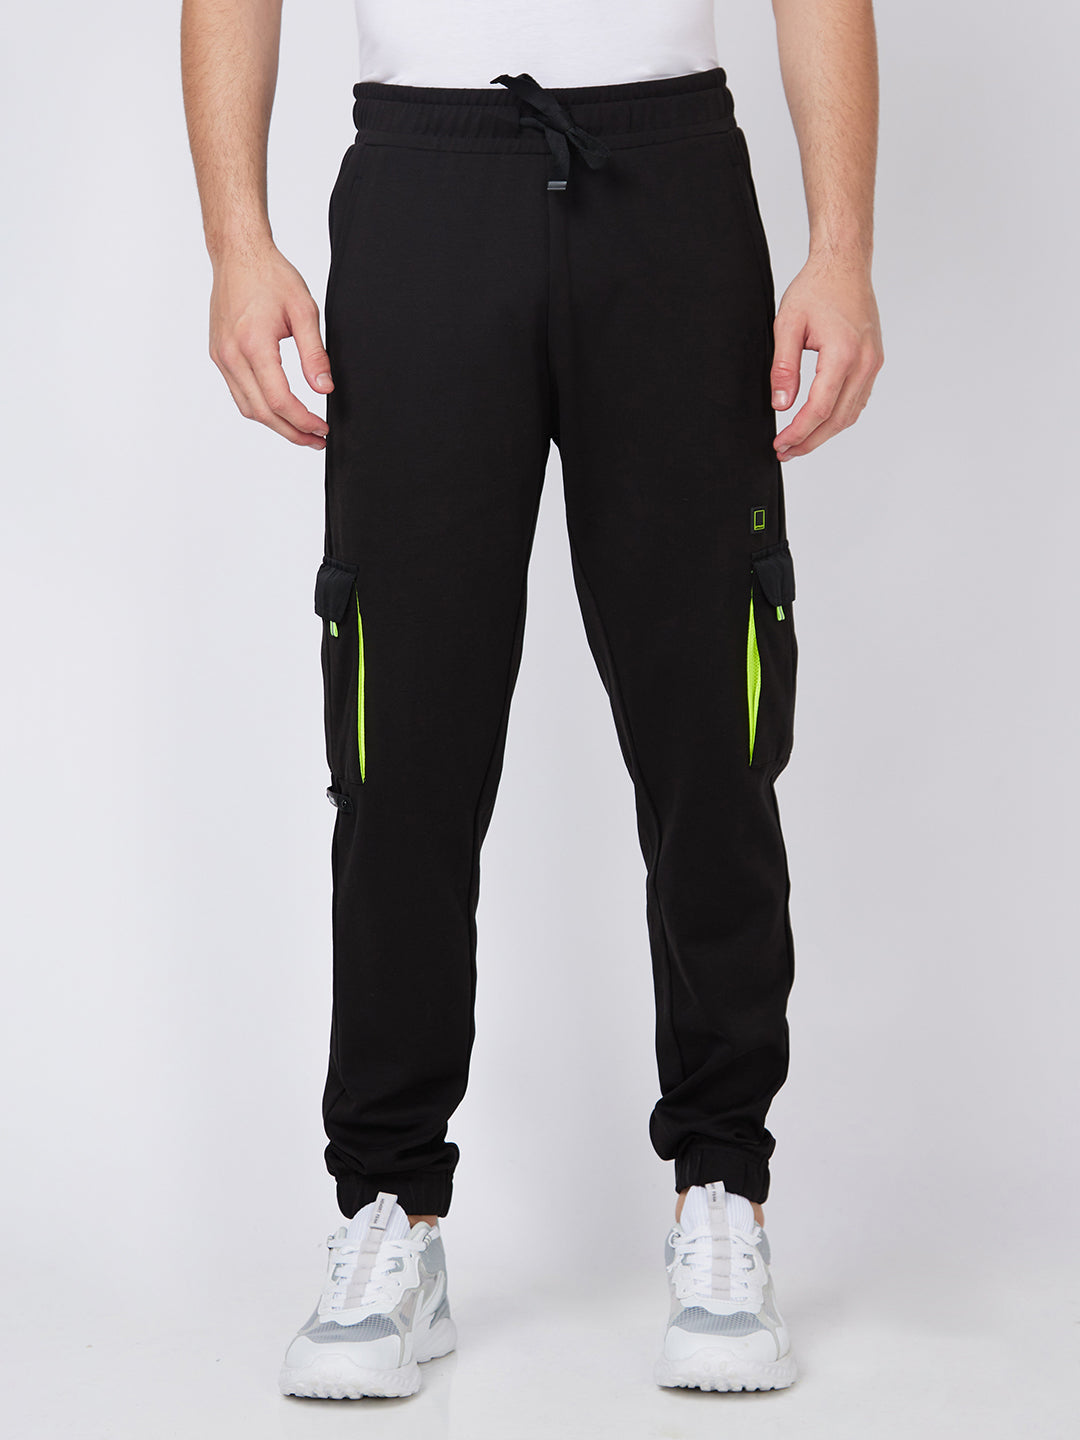 Buy Men Black Dry Fit Stretchable Slim Track Pants Online at Sassafras